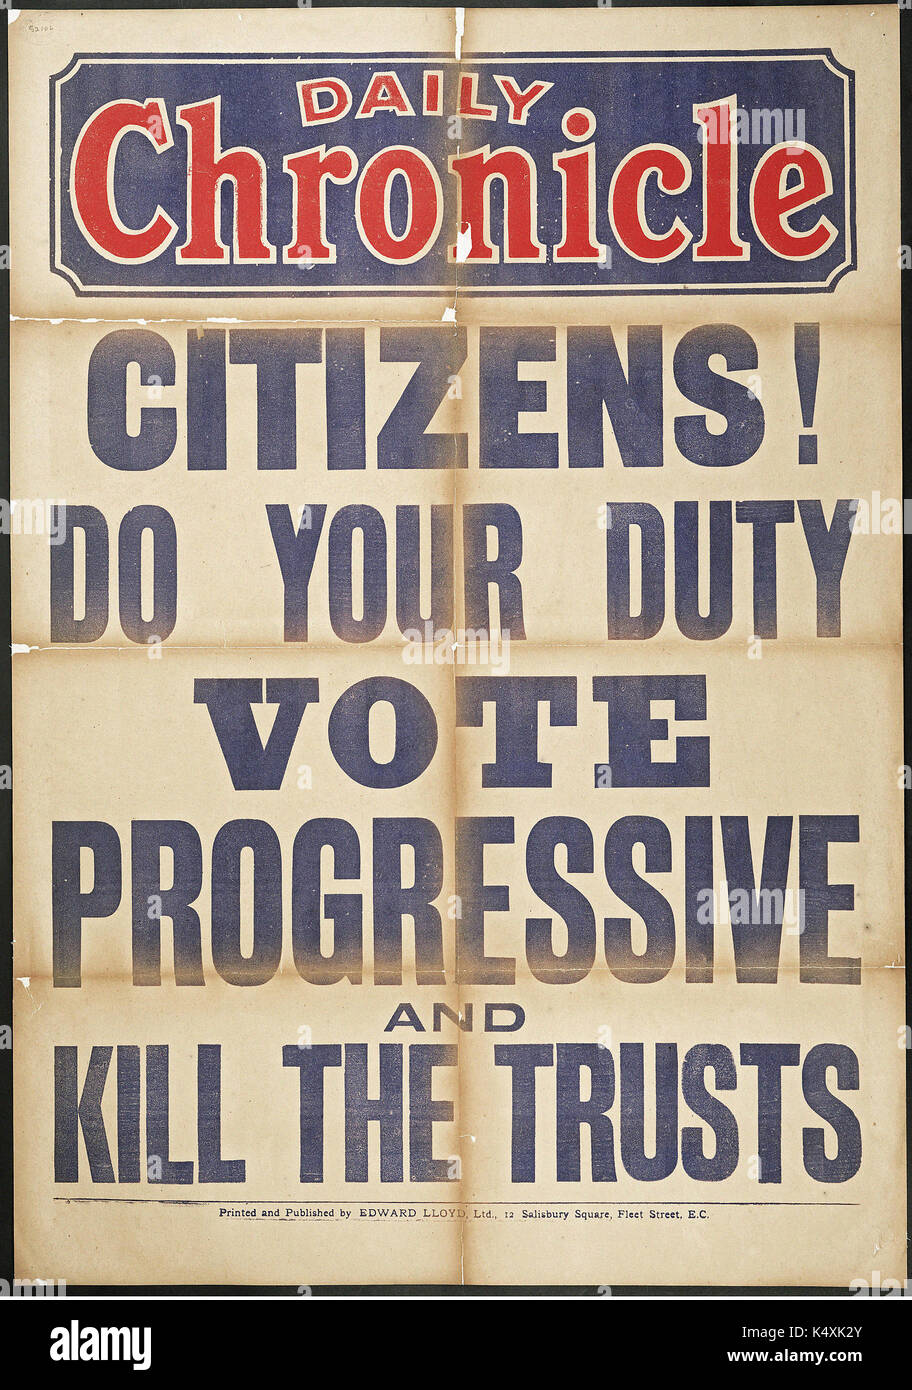 I cittadini! Fare il tuo dovere. Votazione progressiva e uccidere il trust. - London County Council elezioni, 1907 Foto Stock